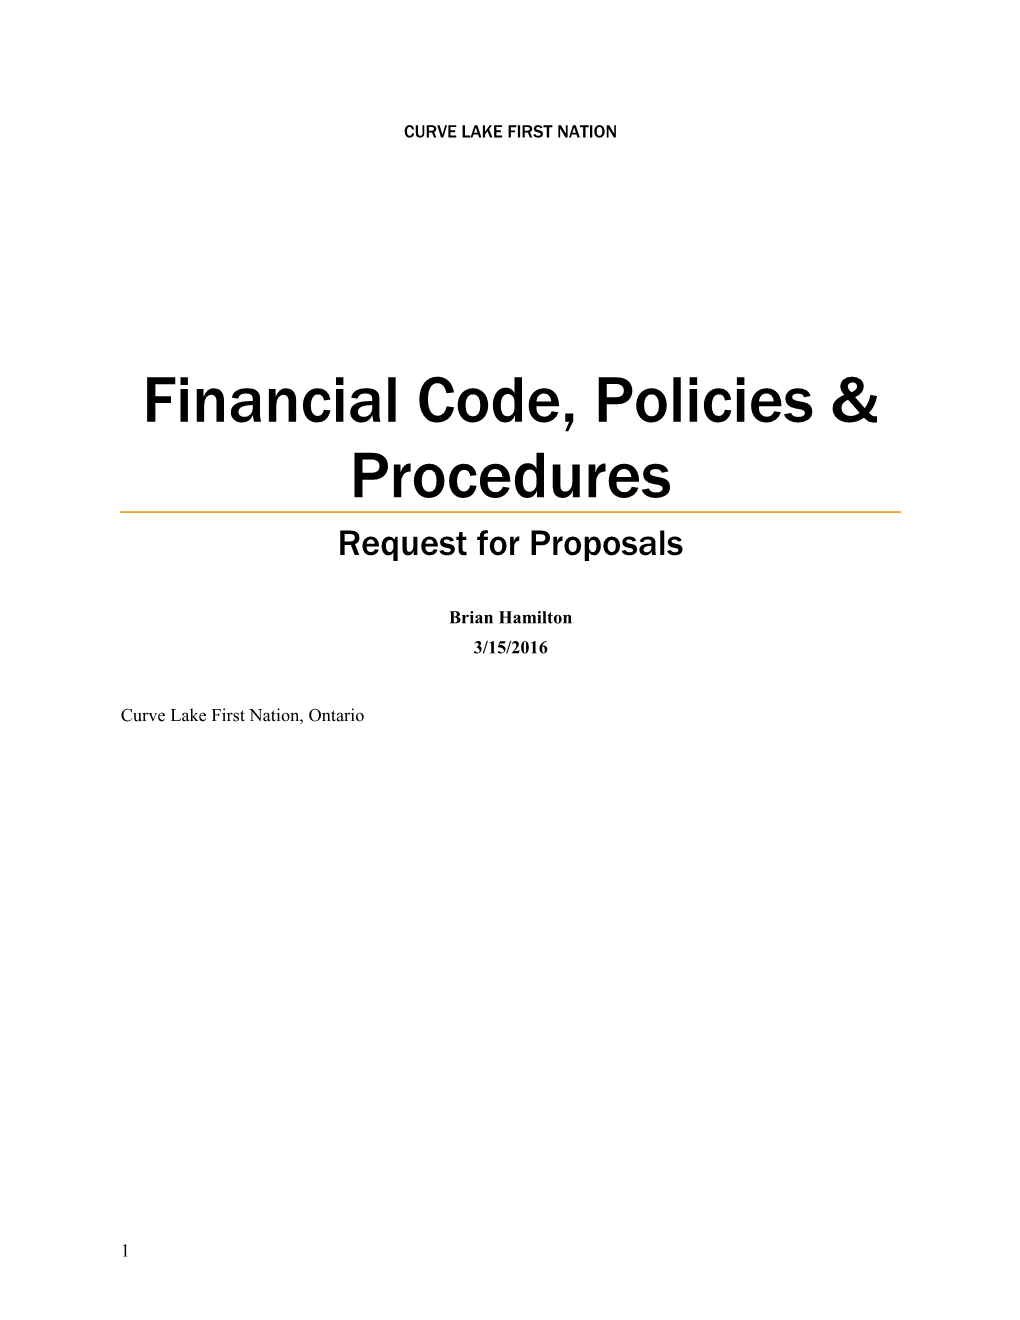 Financial Code, Policies & Procedures